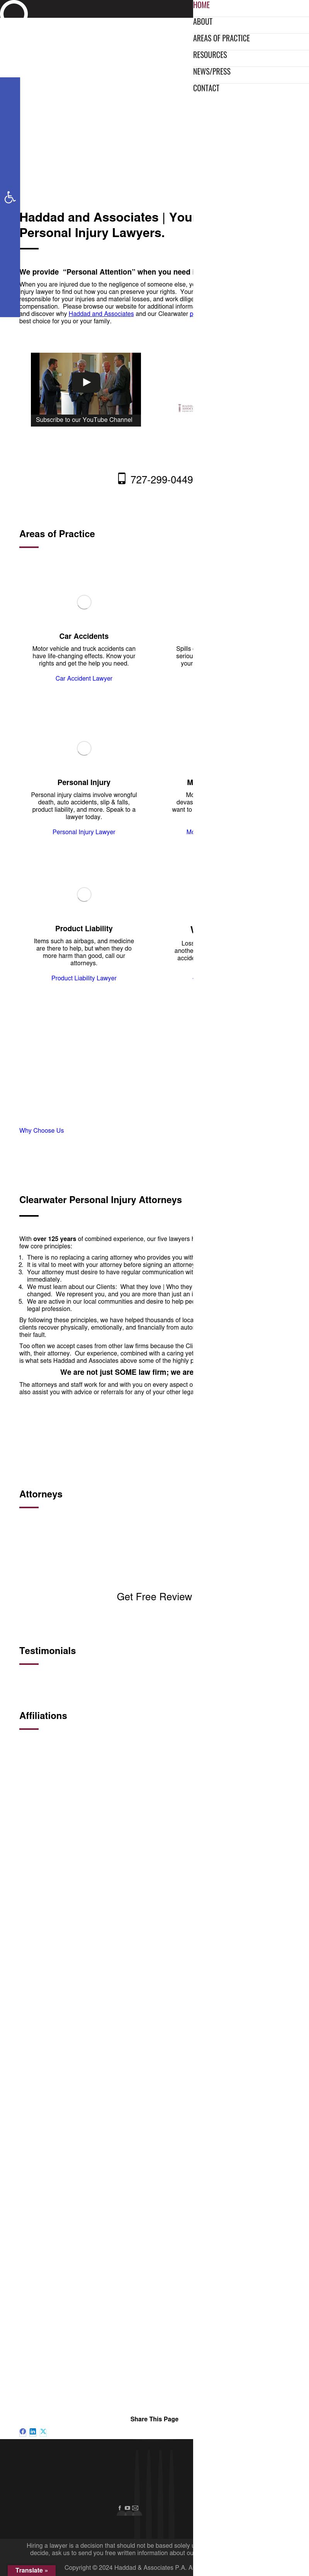 Haddad & Associates - Clearwater FL Lawyers